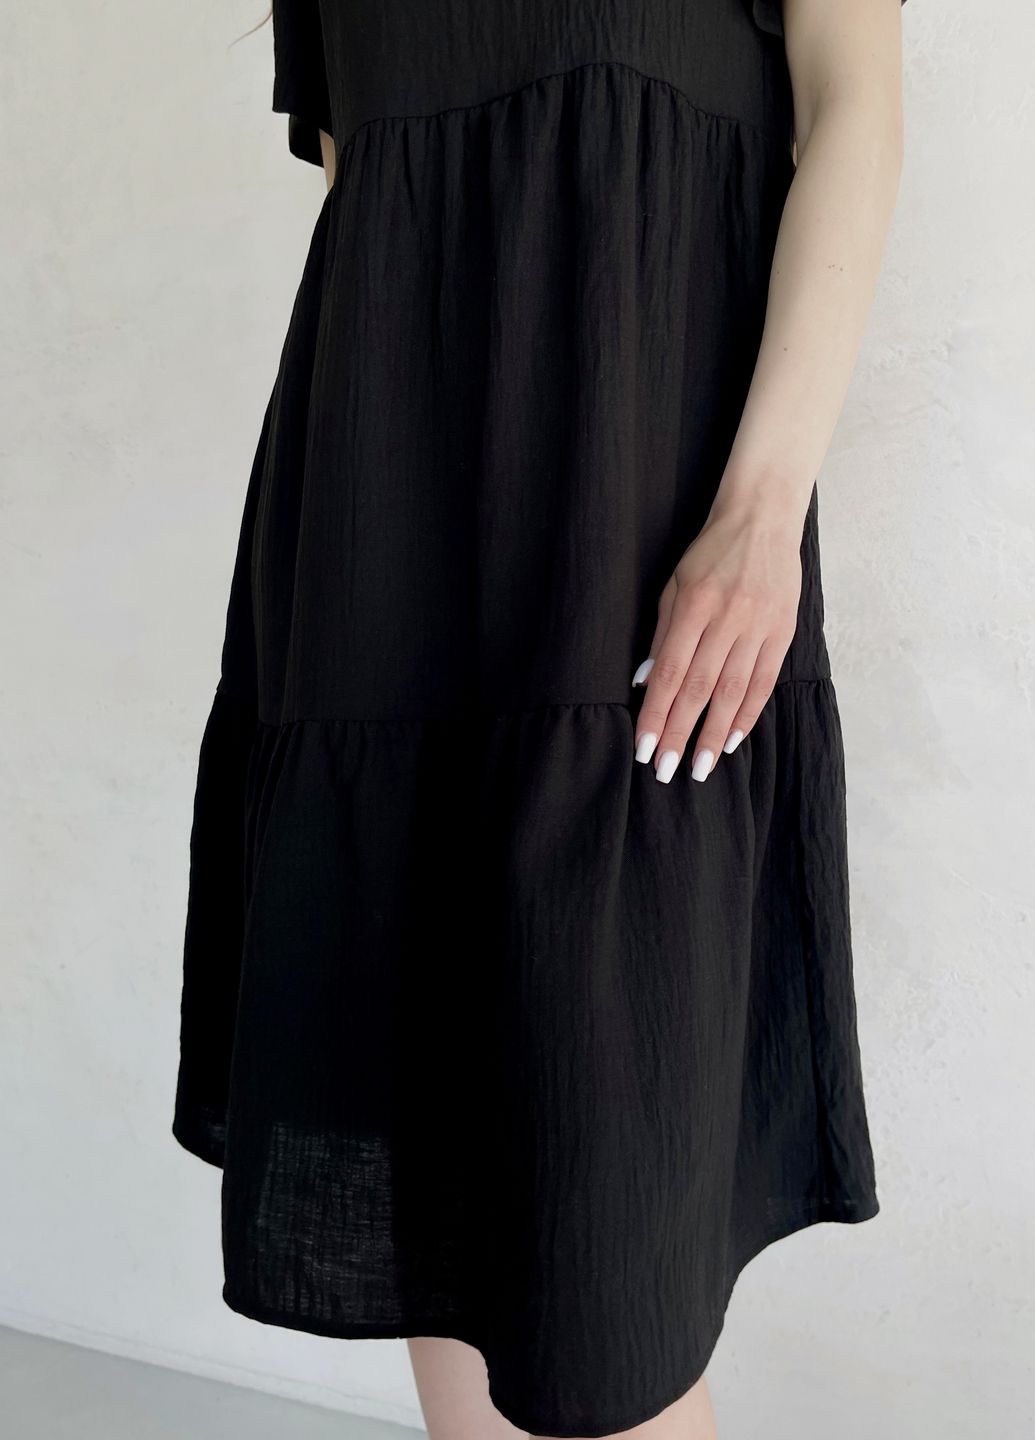 Купить Женское платье до колена однотонное с коротким рукавом из льна черное Merlini Сесто 700000161, размер 42-44 (S-M) в интернет-магазине